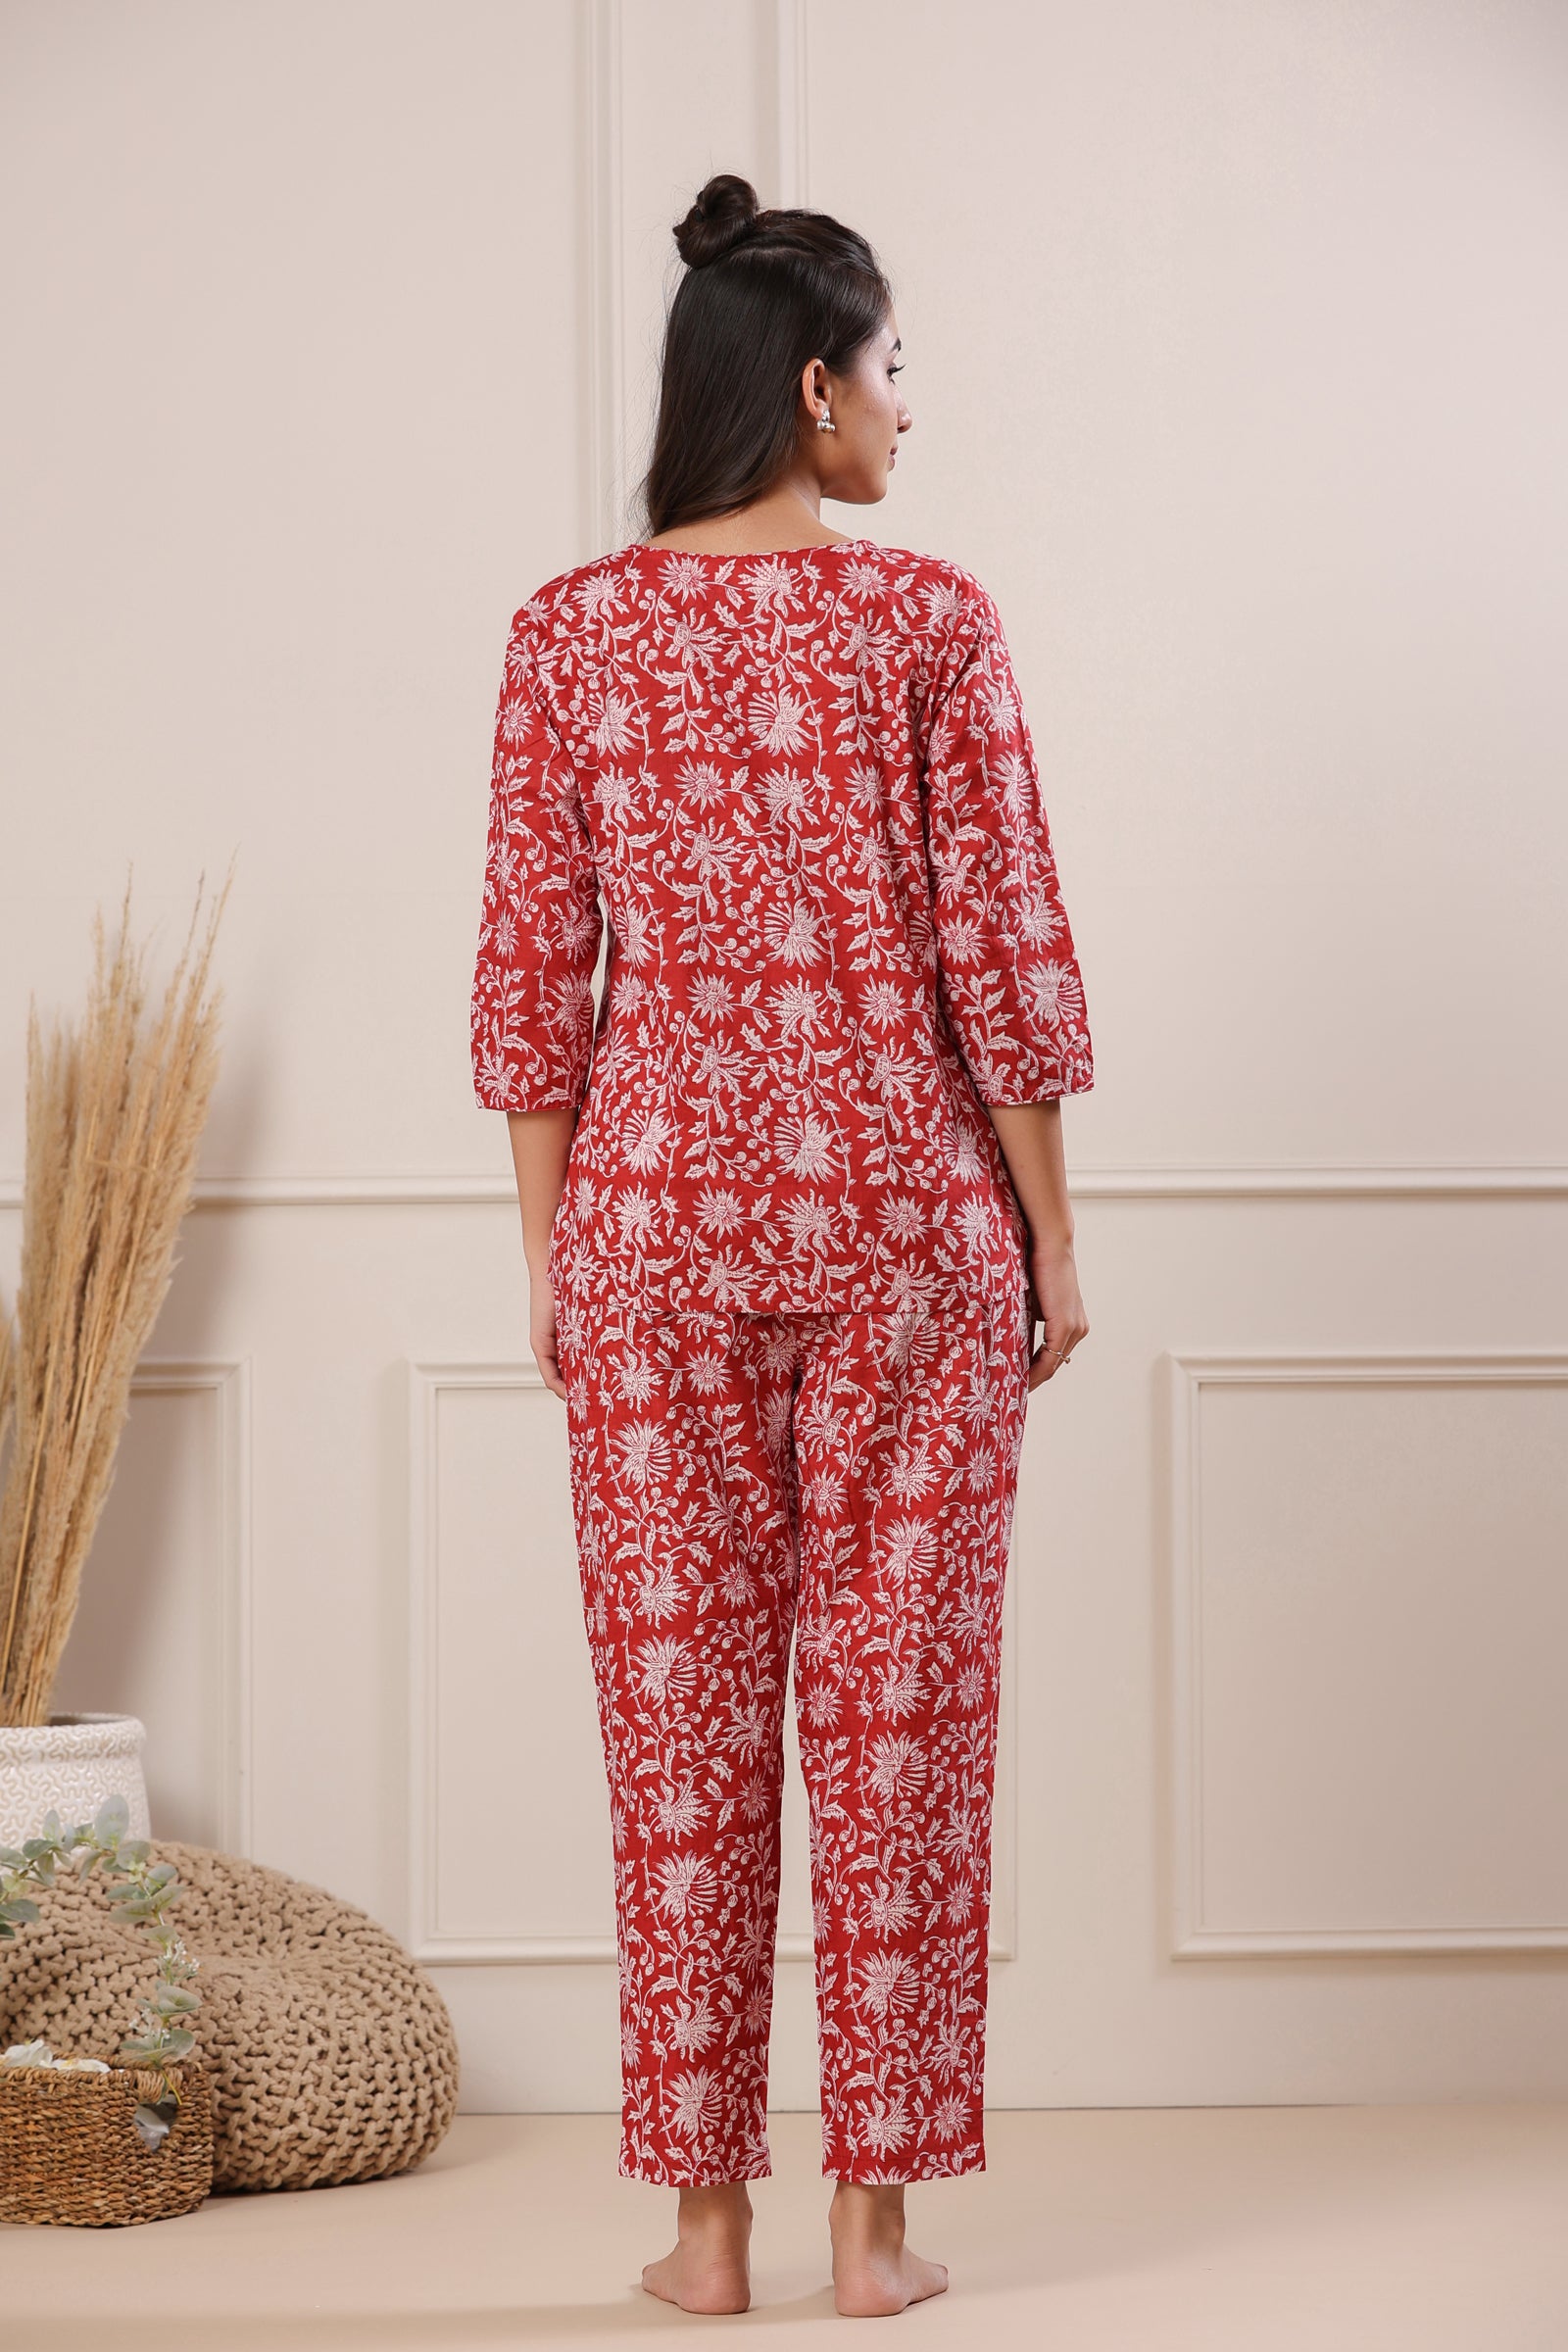 Nidra Sun Vines Red Cotton Pyjama Night Suit Set - shahenazindia